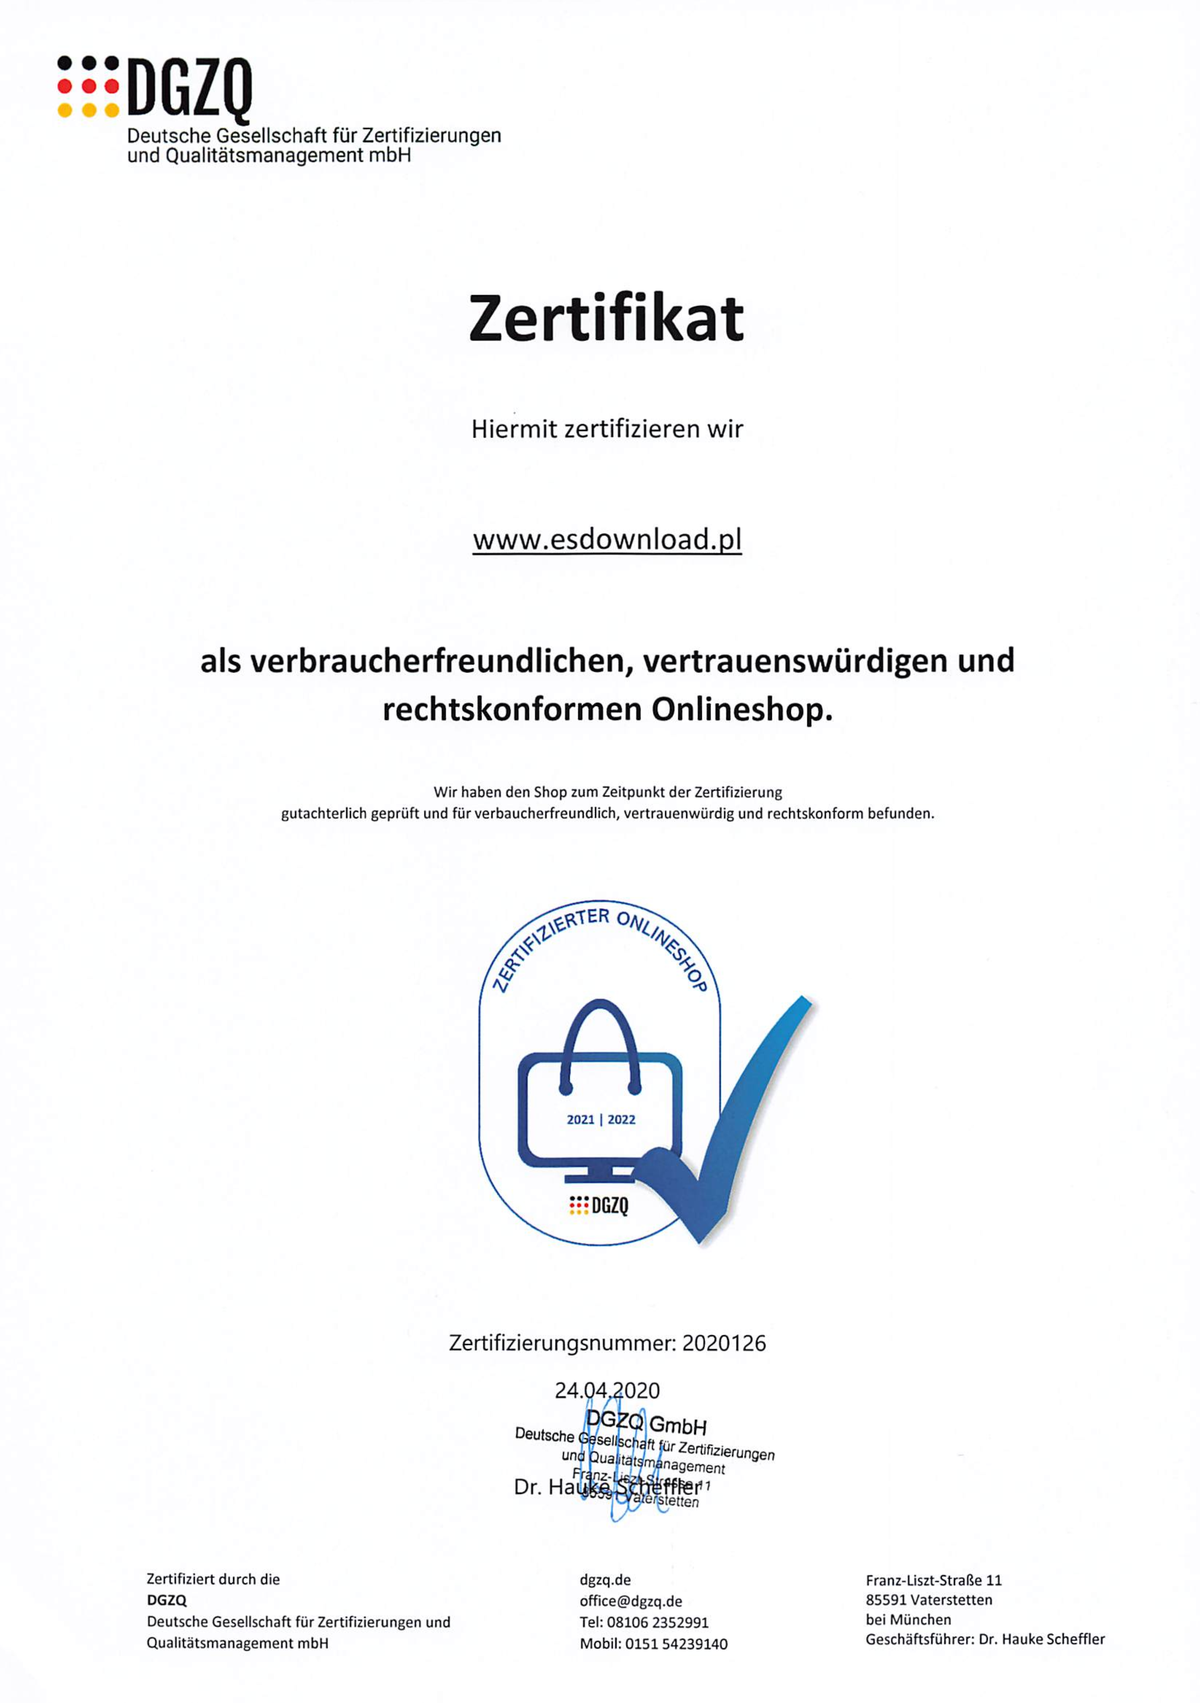 Sklep internetowy z certyfikatem DGZQ dla handlu oprogramowaniem